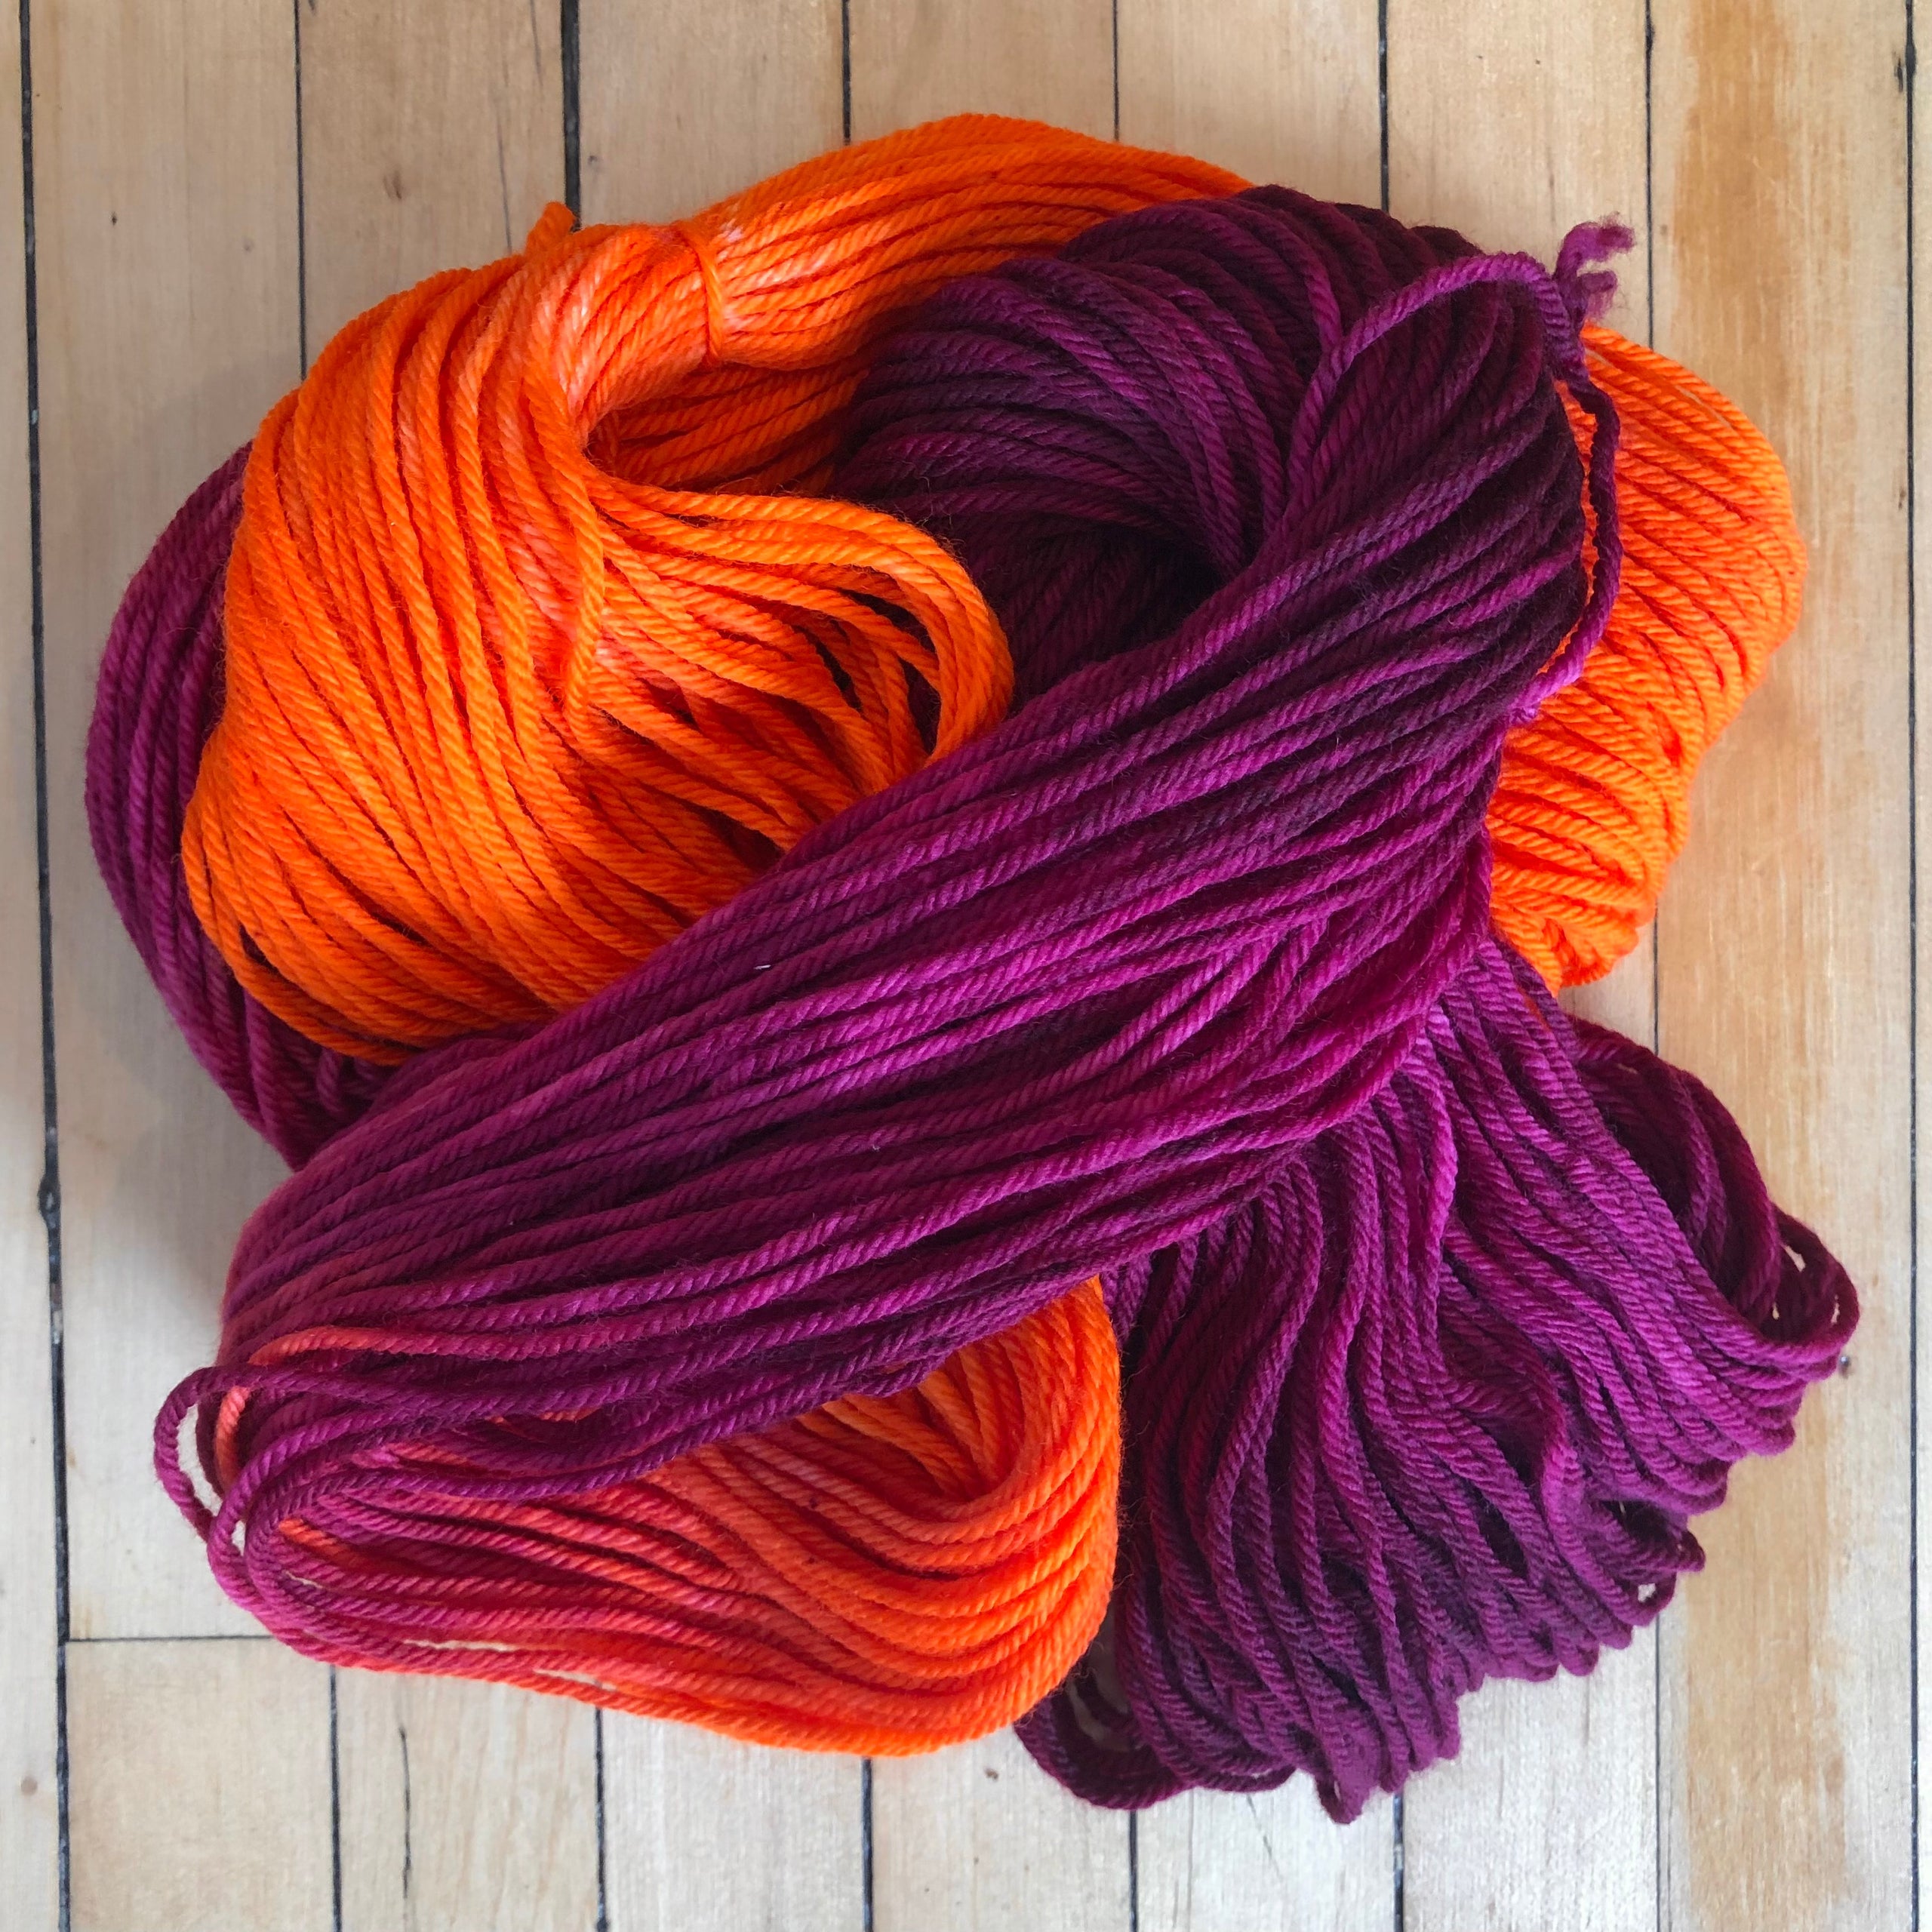 Variegated Color Yarn, Multi-colored Yarn 2 Skeins 